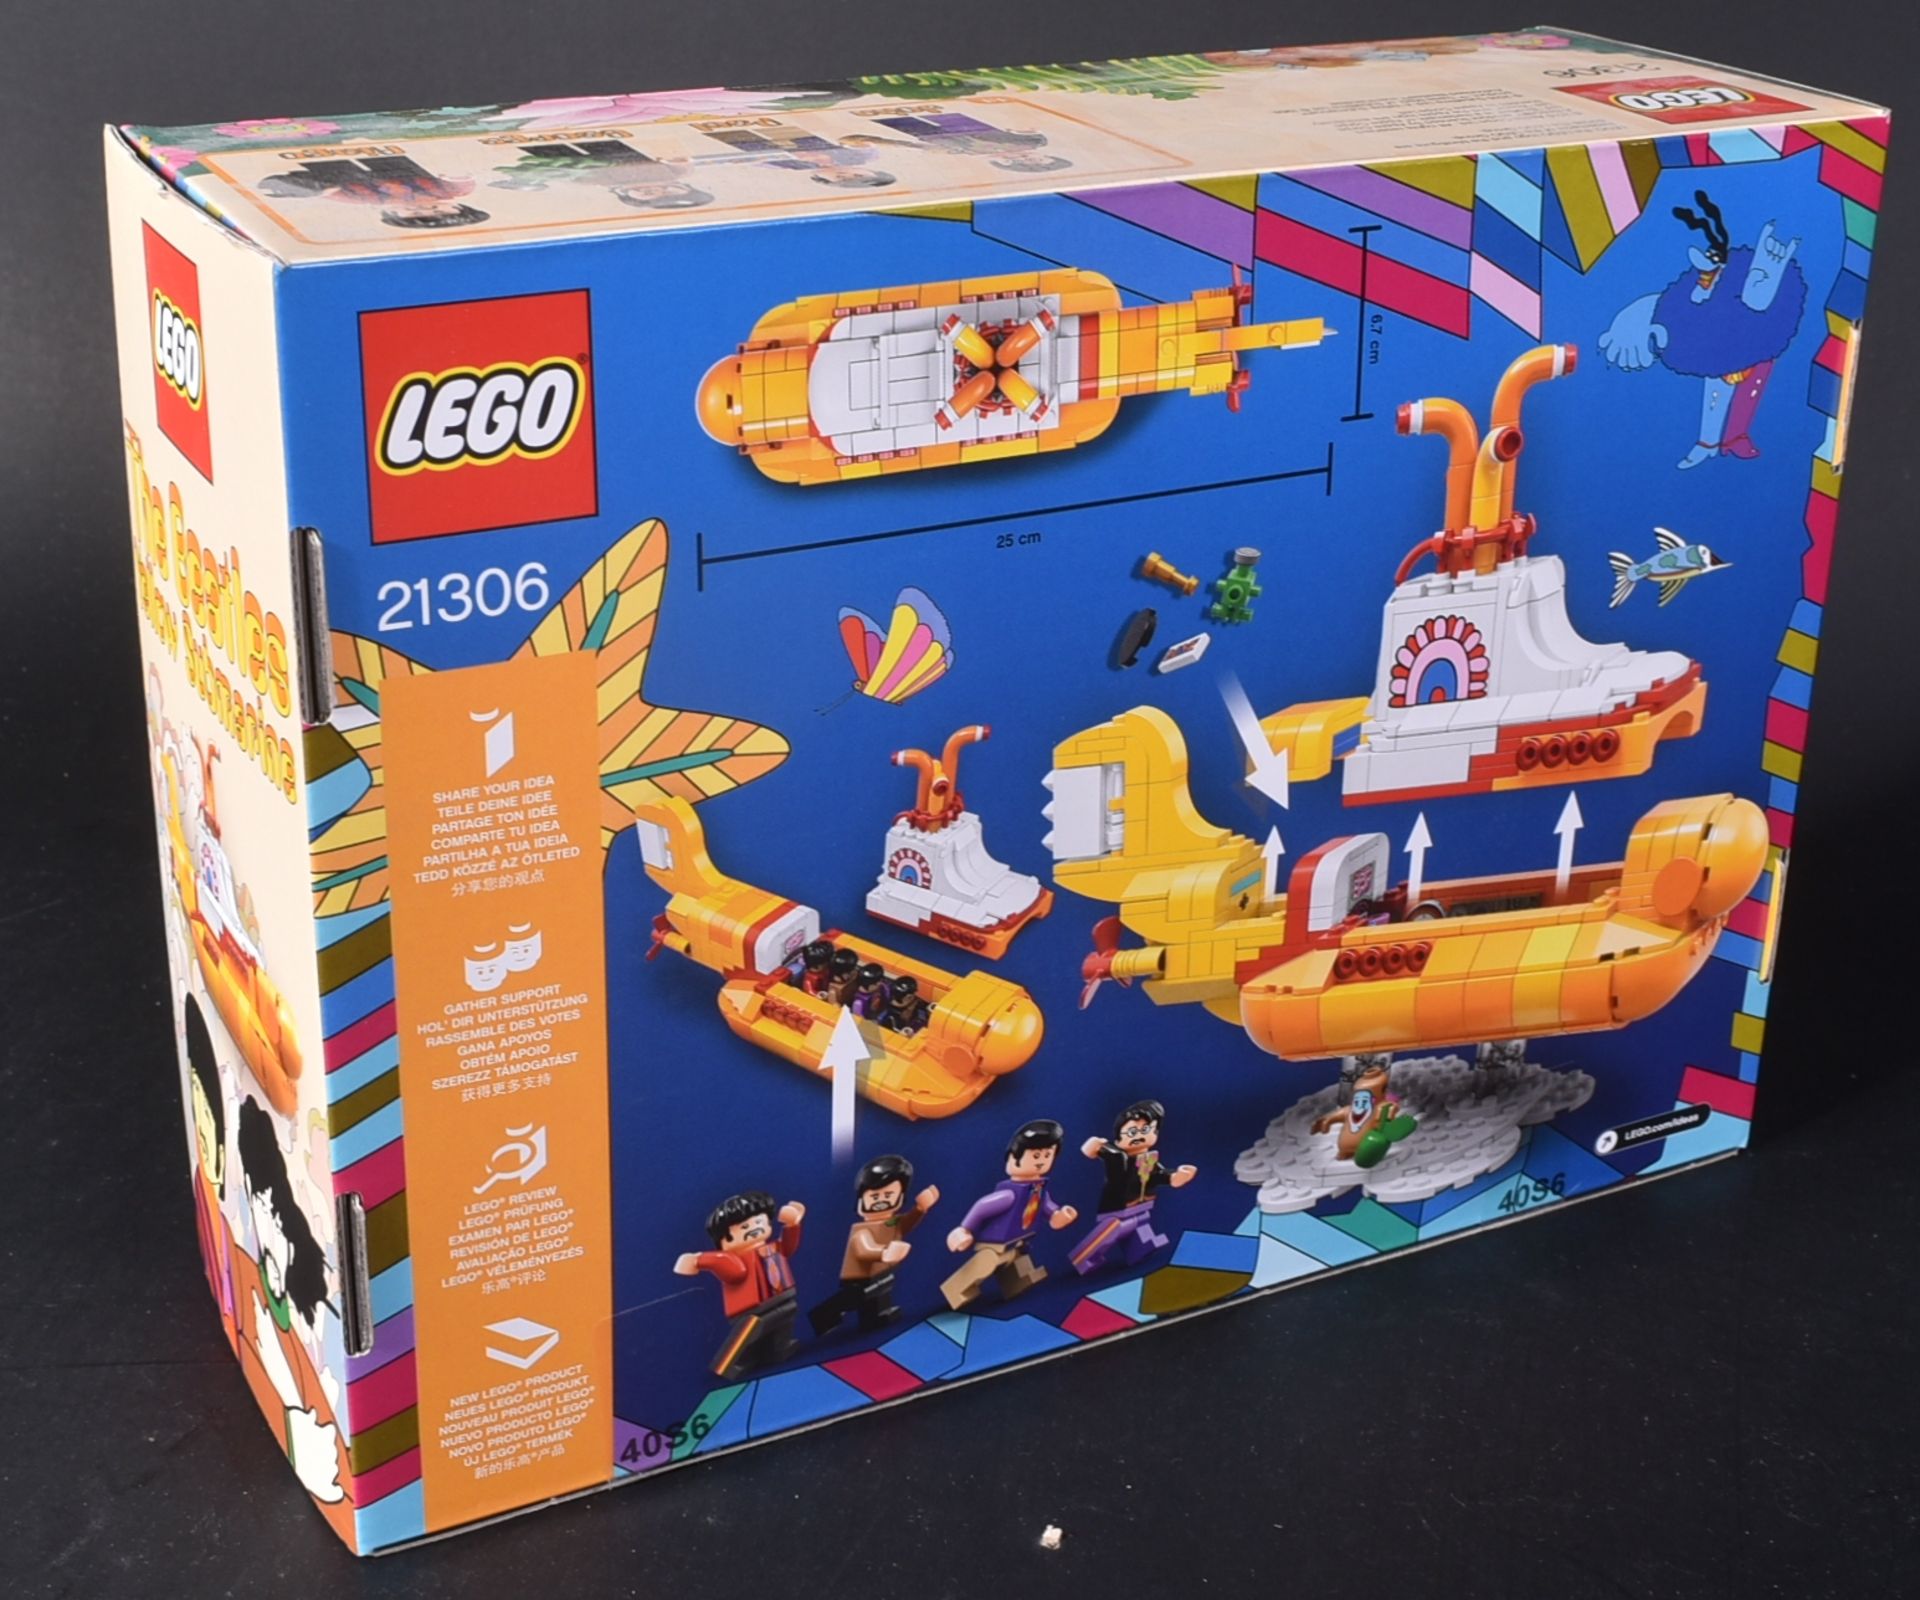 LEGO SET - THE BEATLES - 21306 - YELLOW SUBMARINE - Image 2 of 2